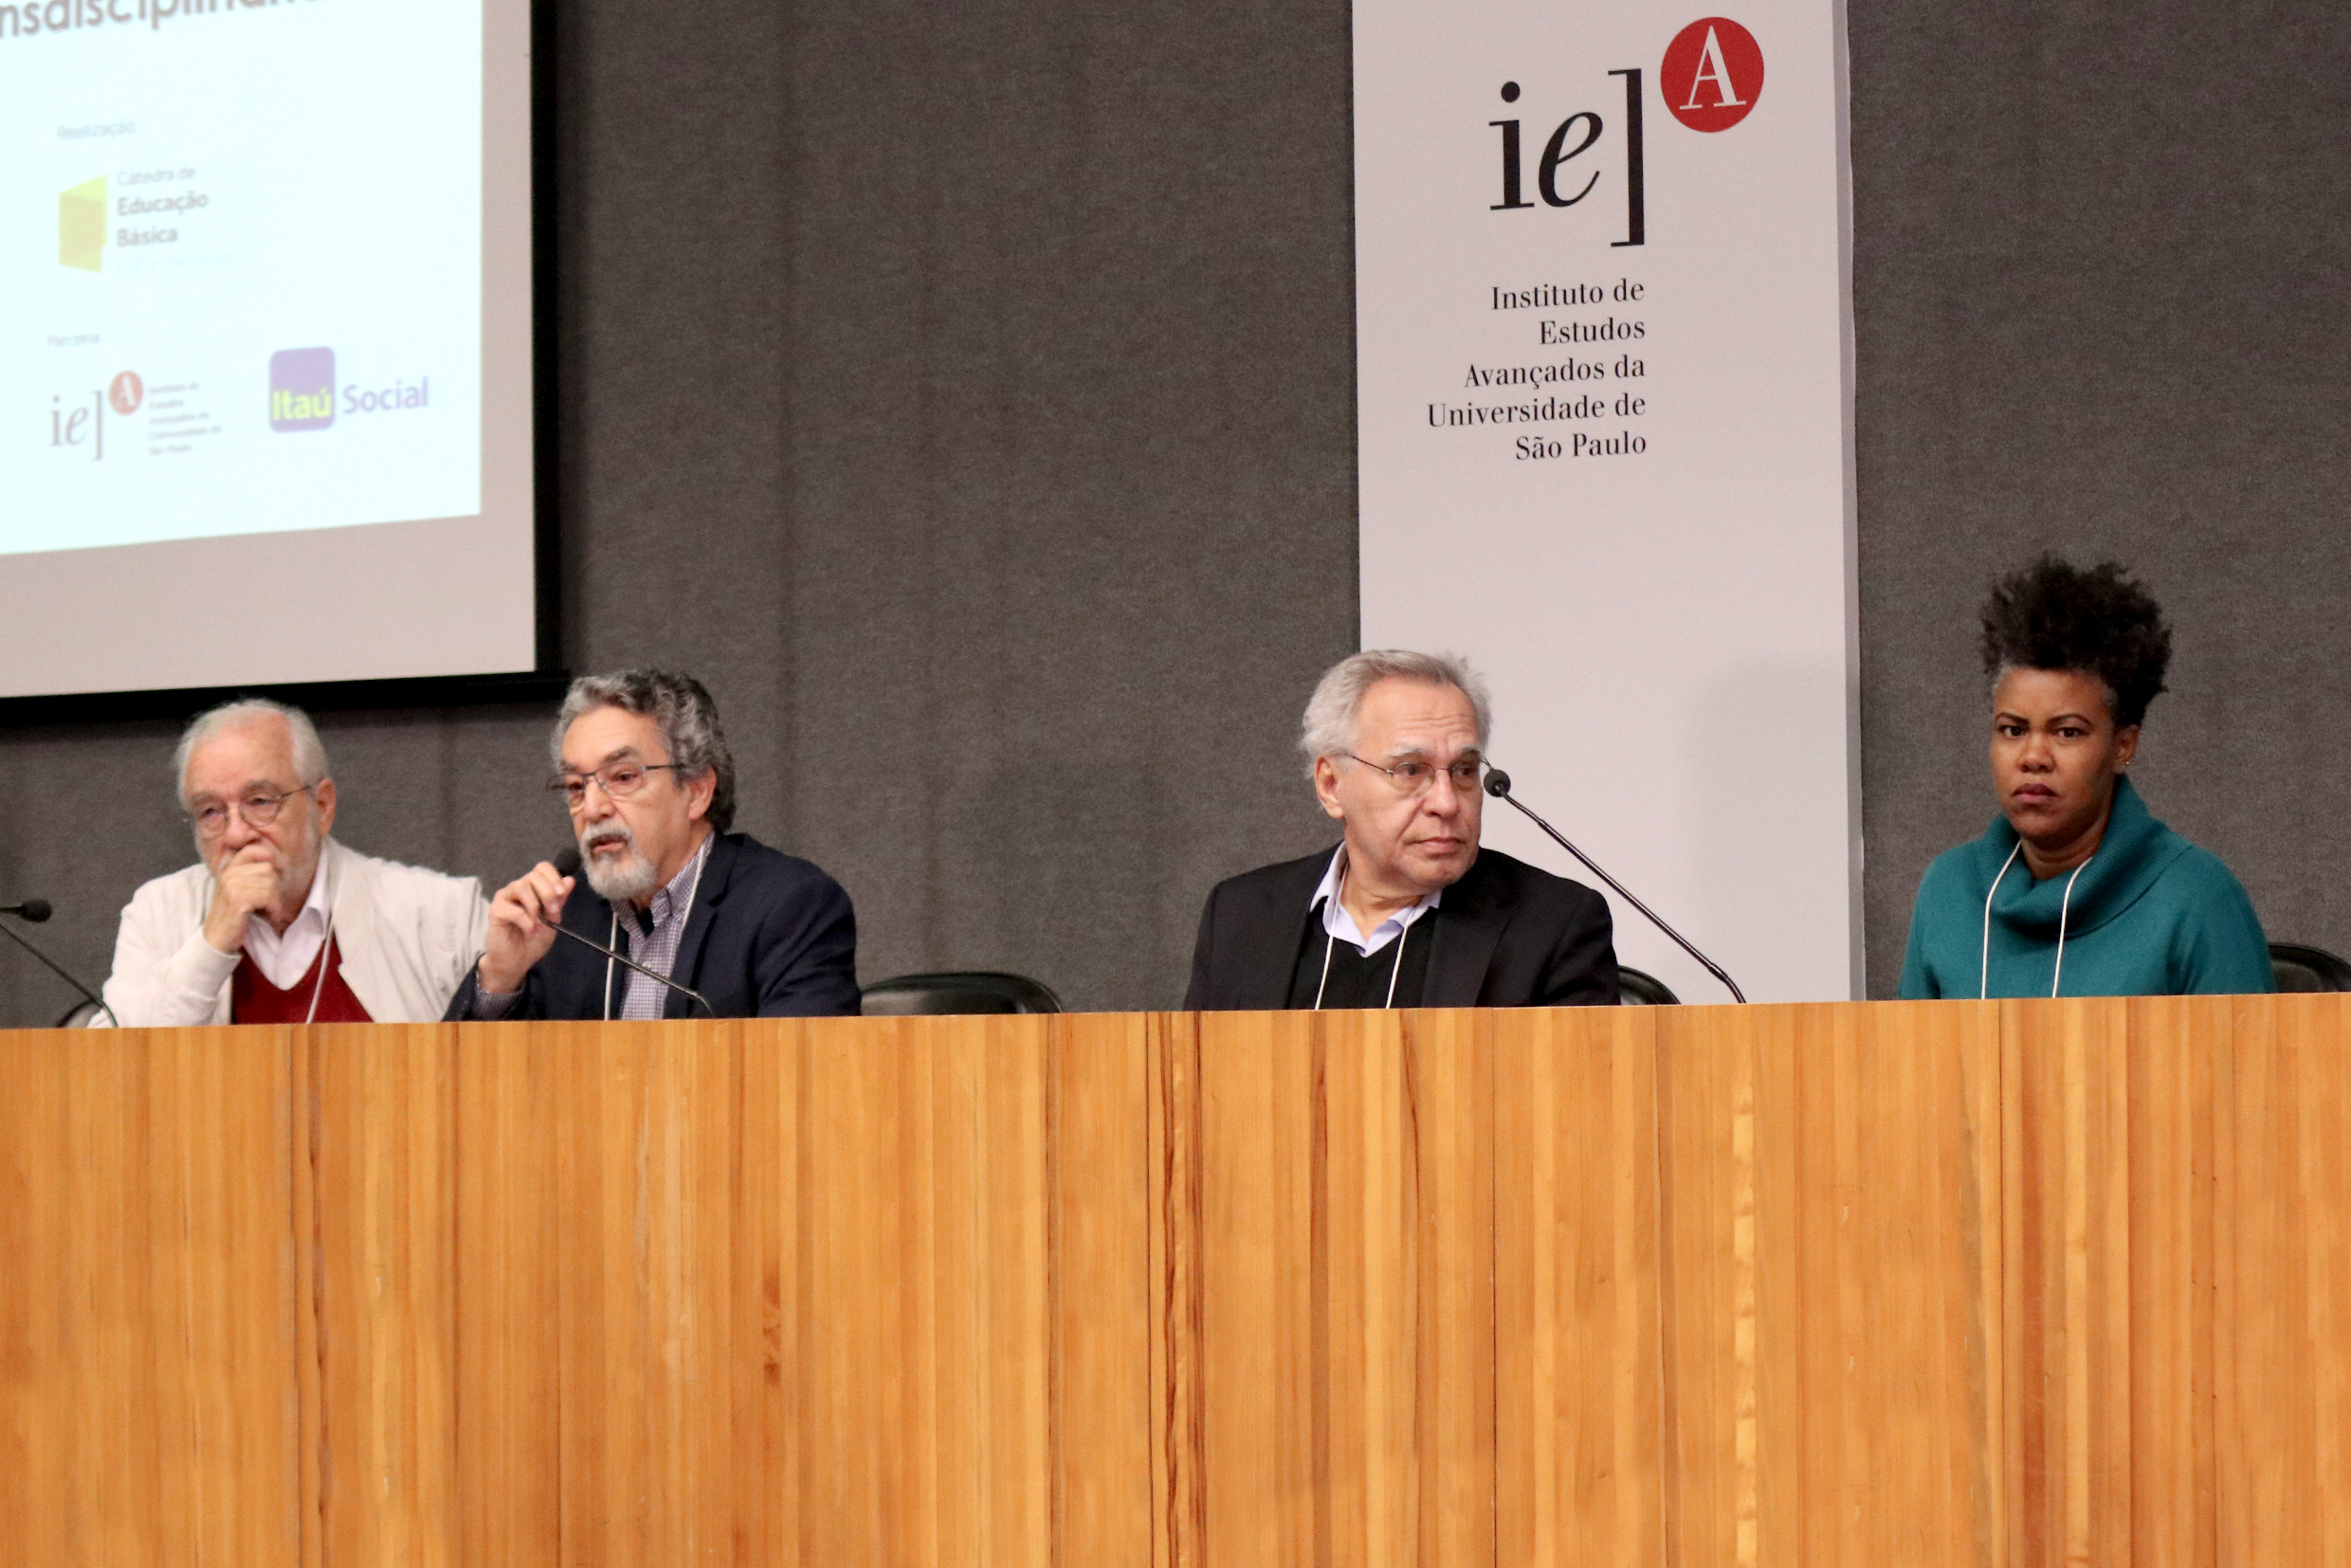 Luis Carlos de Menezes, Nílson José Machado, Lino de Macedo e Juliana Yade